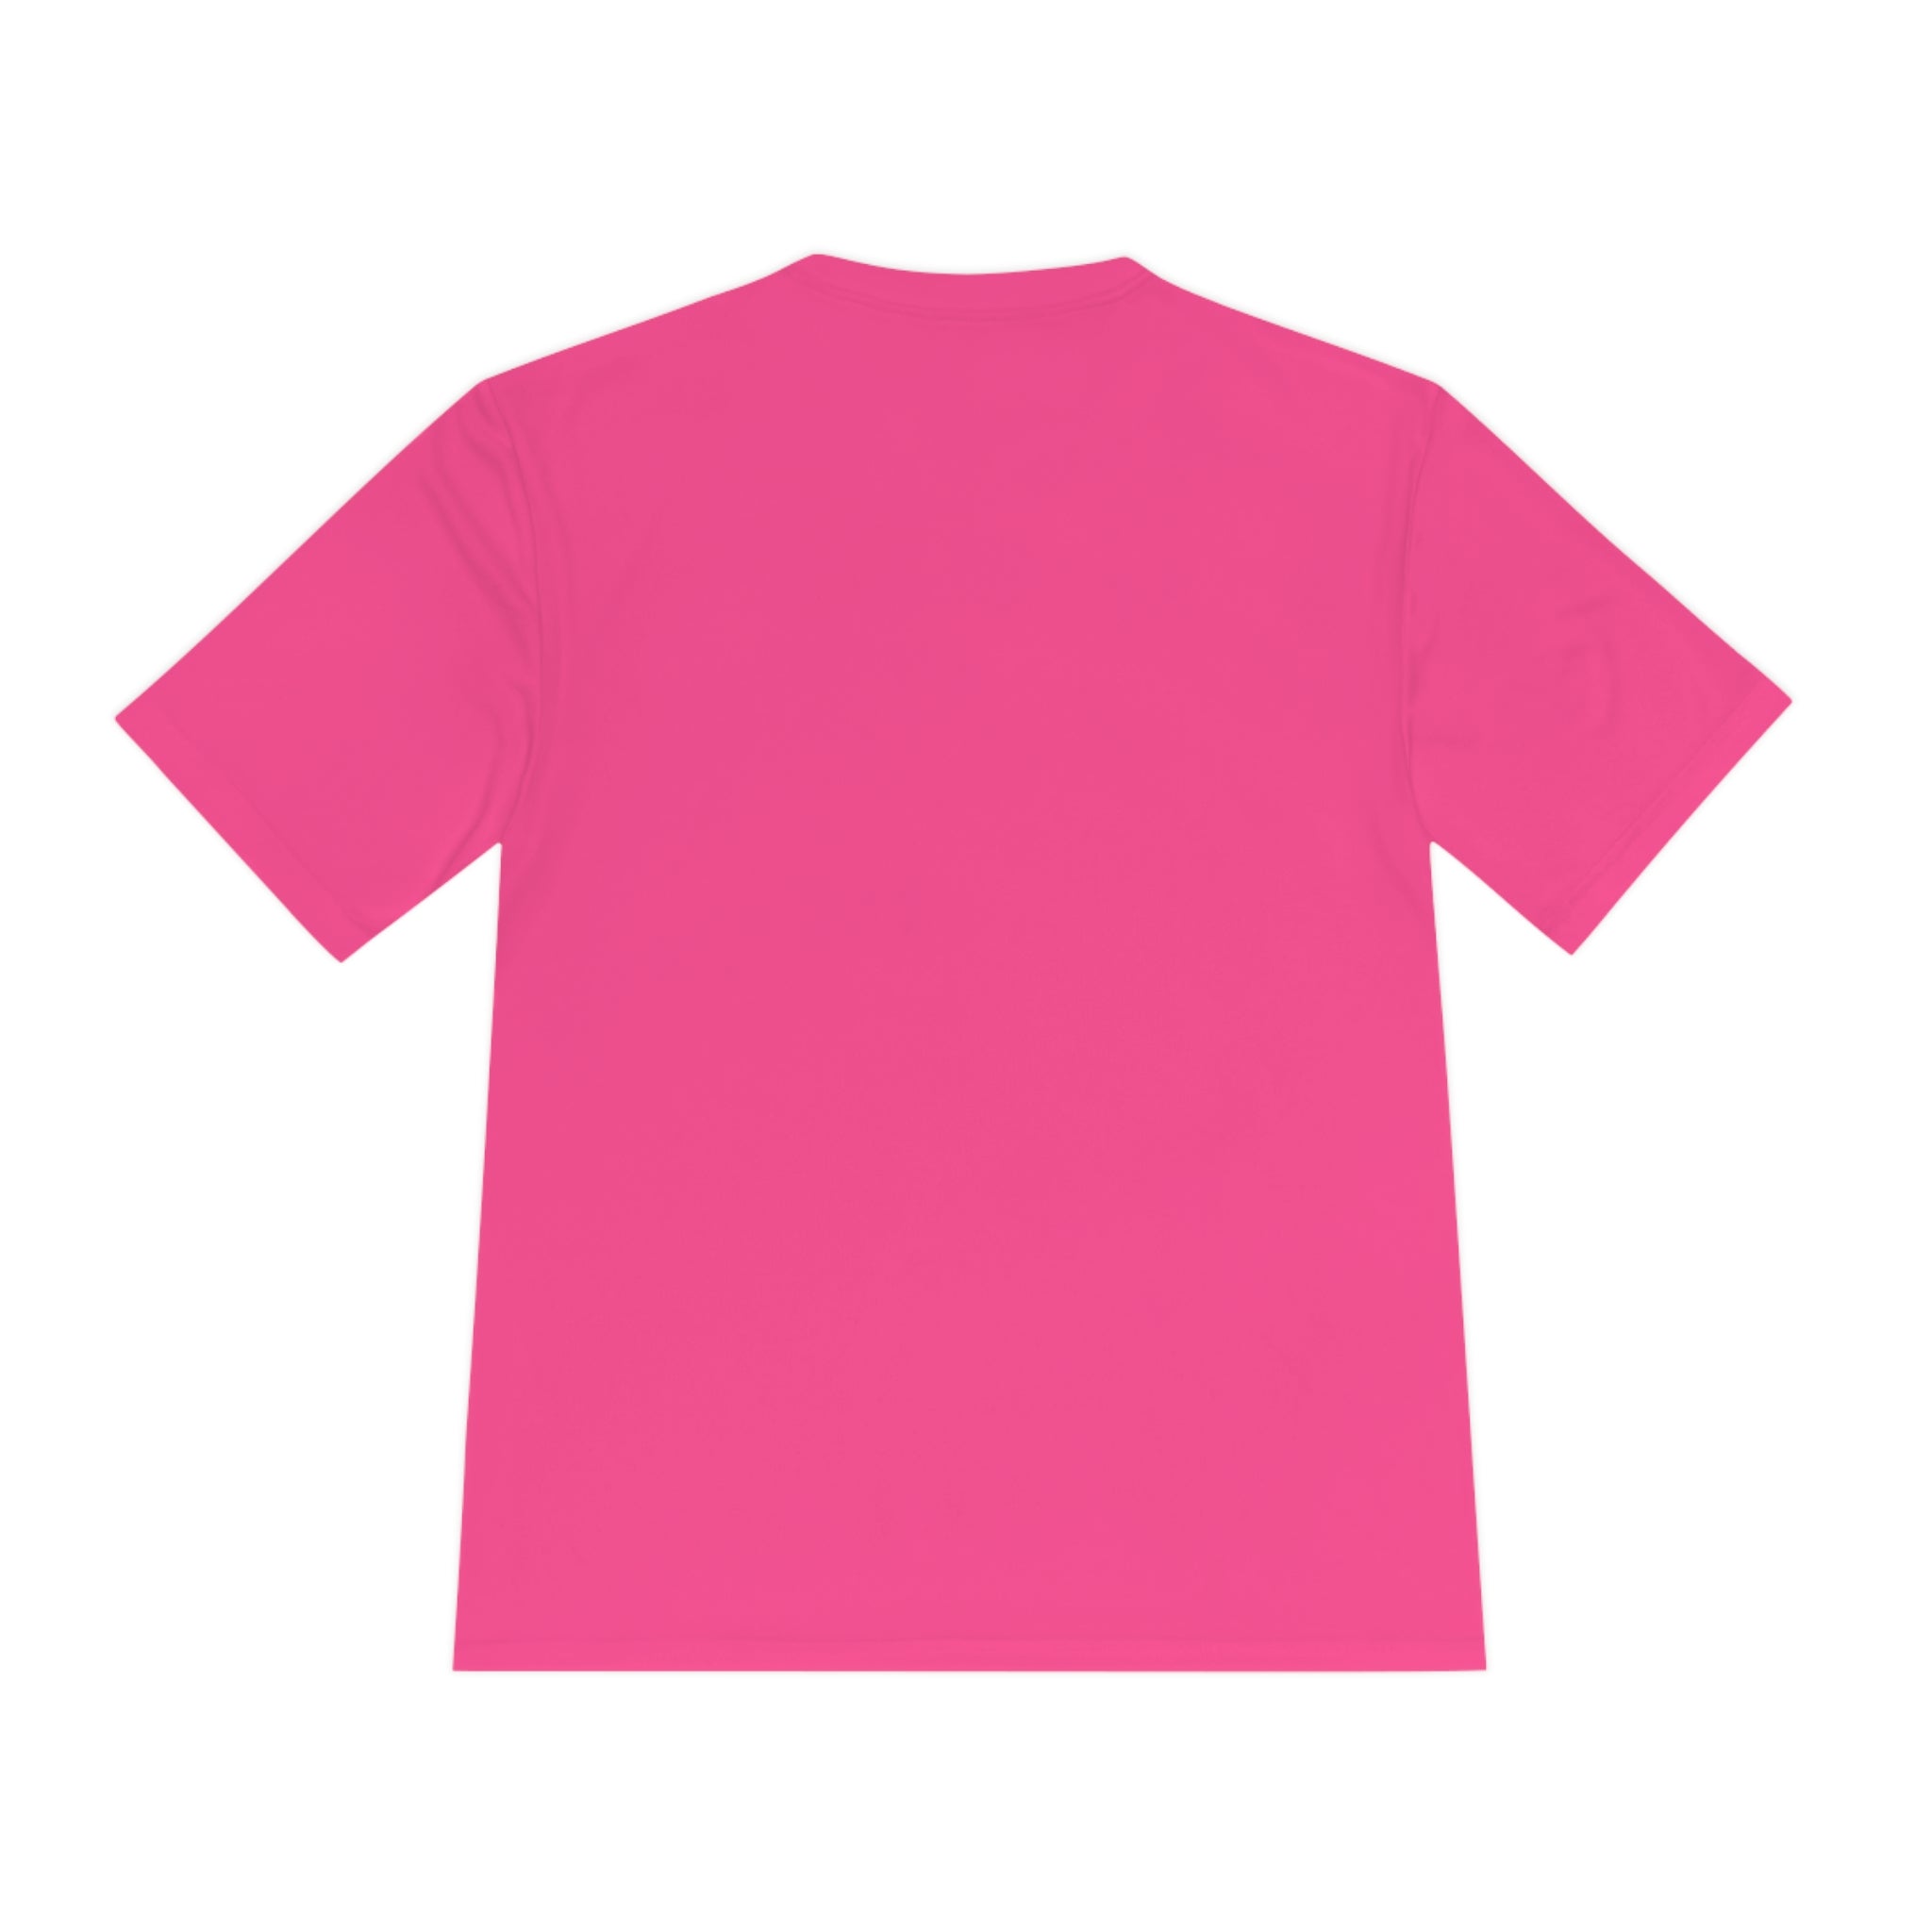 Athlete Tee - Neon Pink